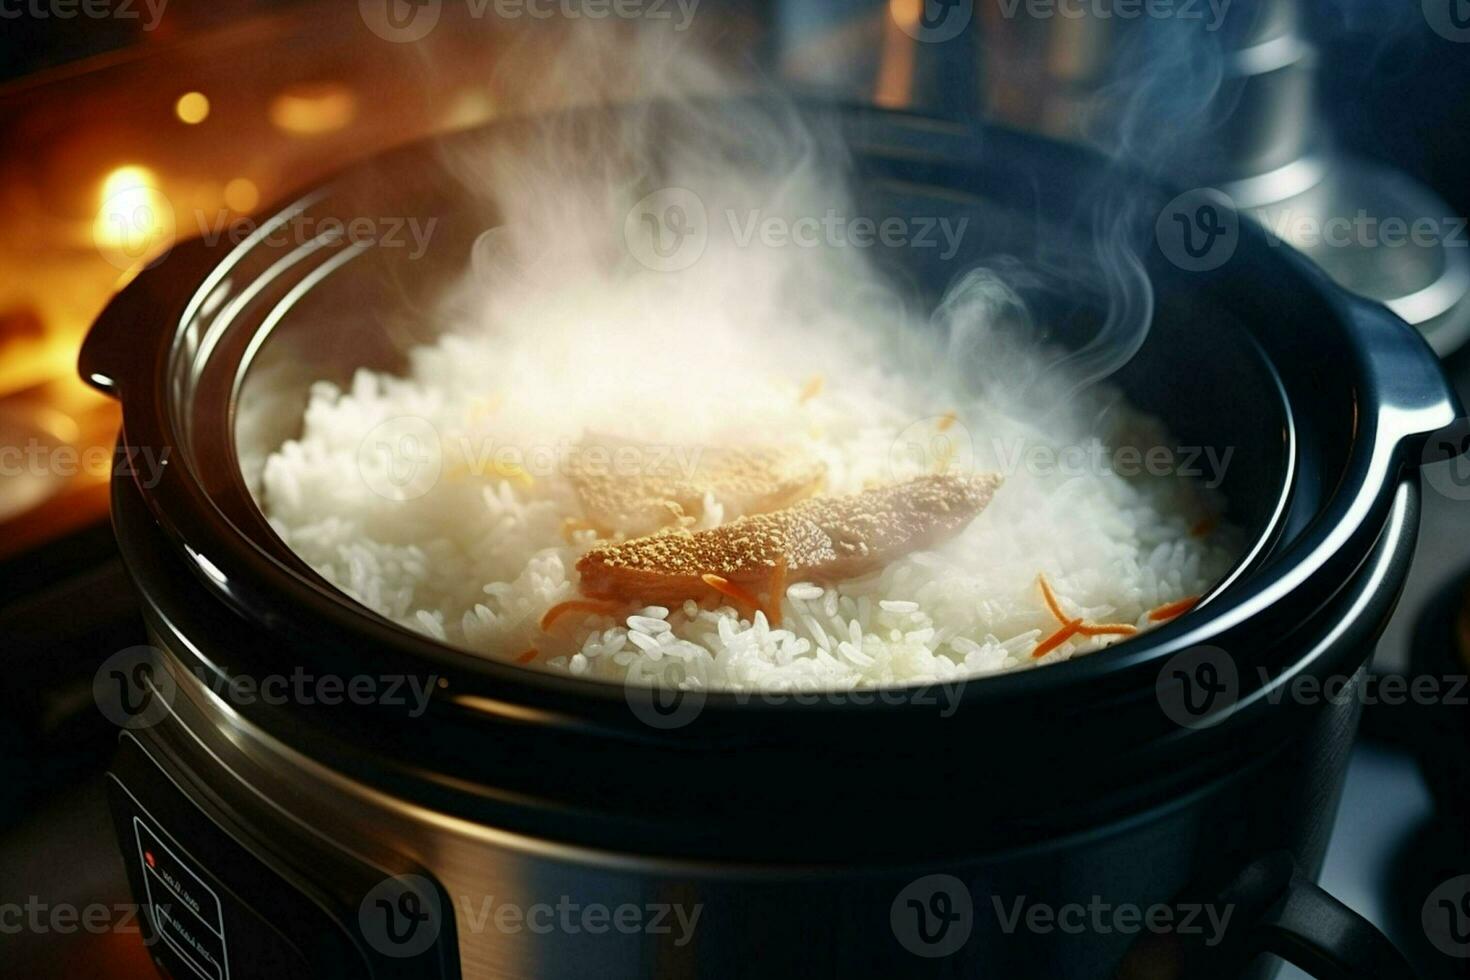 cozinhando arroz dentro quente Panela com vapor em forno, fechar-se. ai gerado pró foto